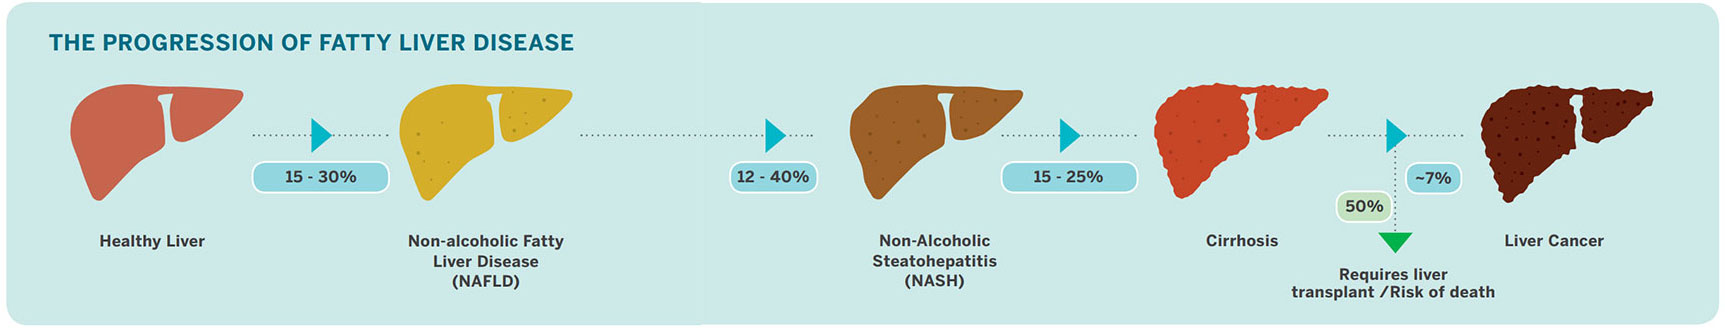 fatty liver disease progression